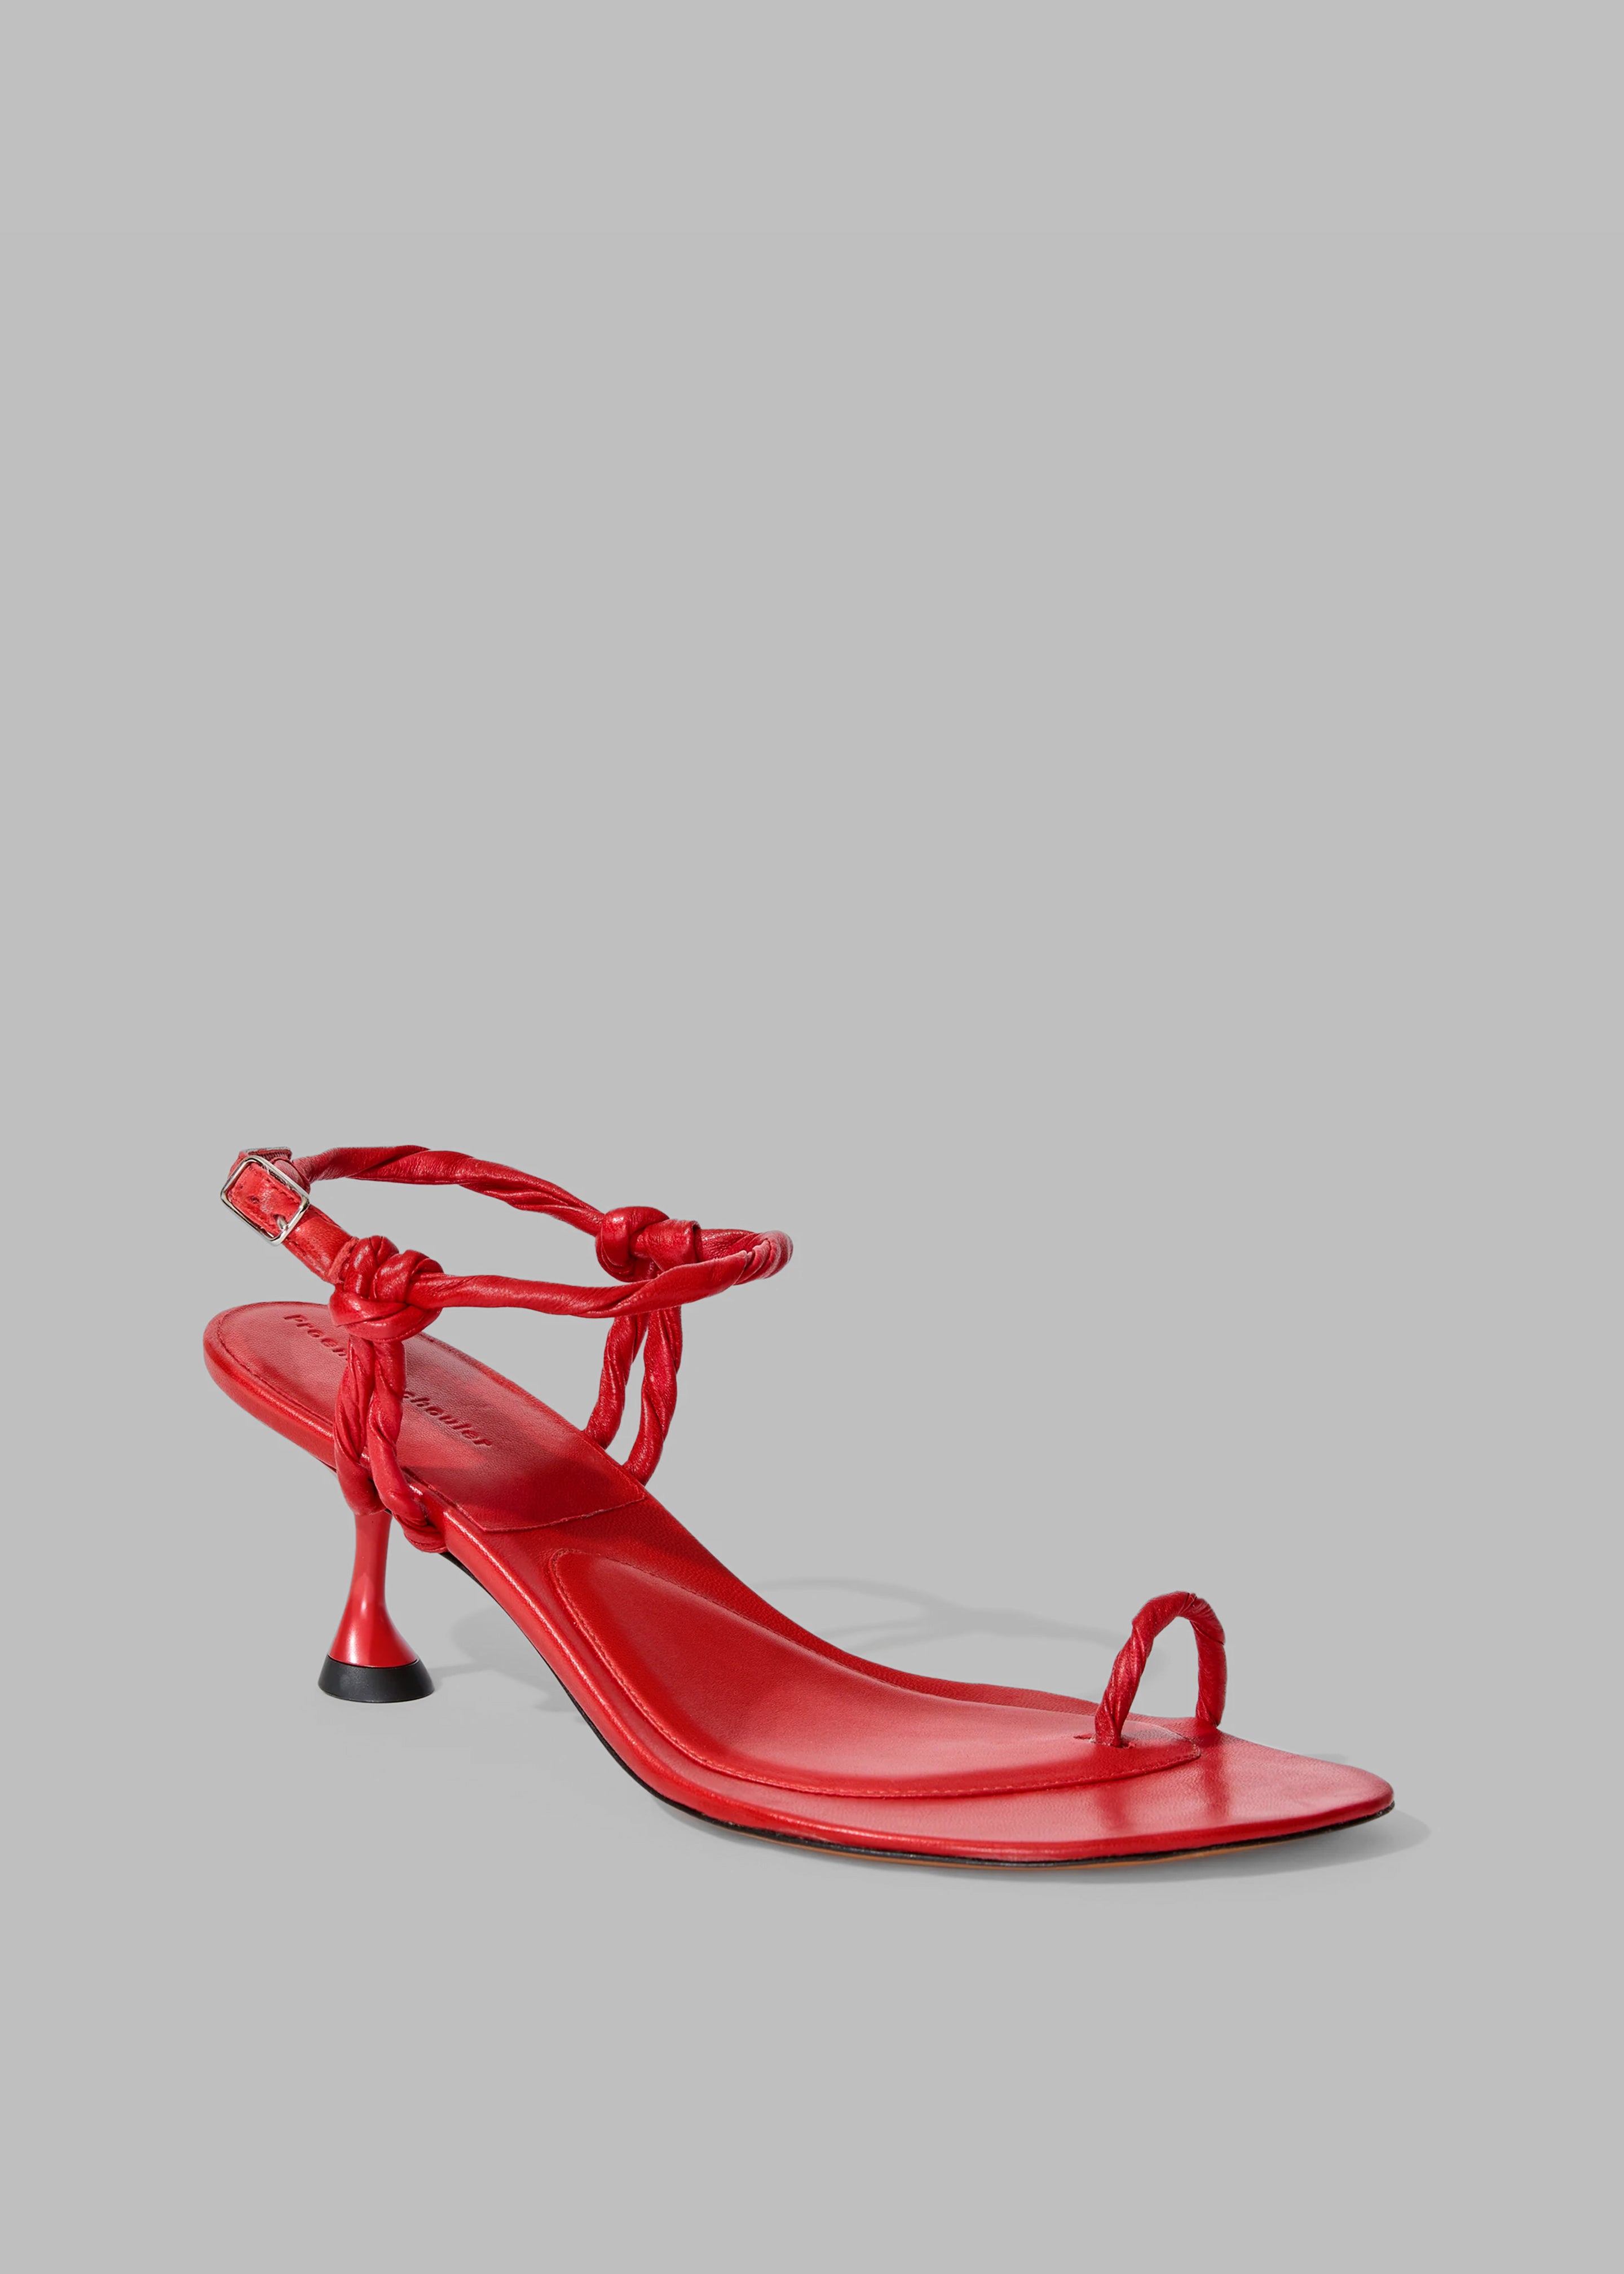 Proenza Schouler Tee Toe Ring Sandals - Red - 6